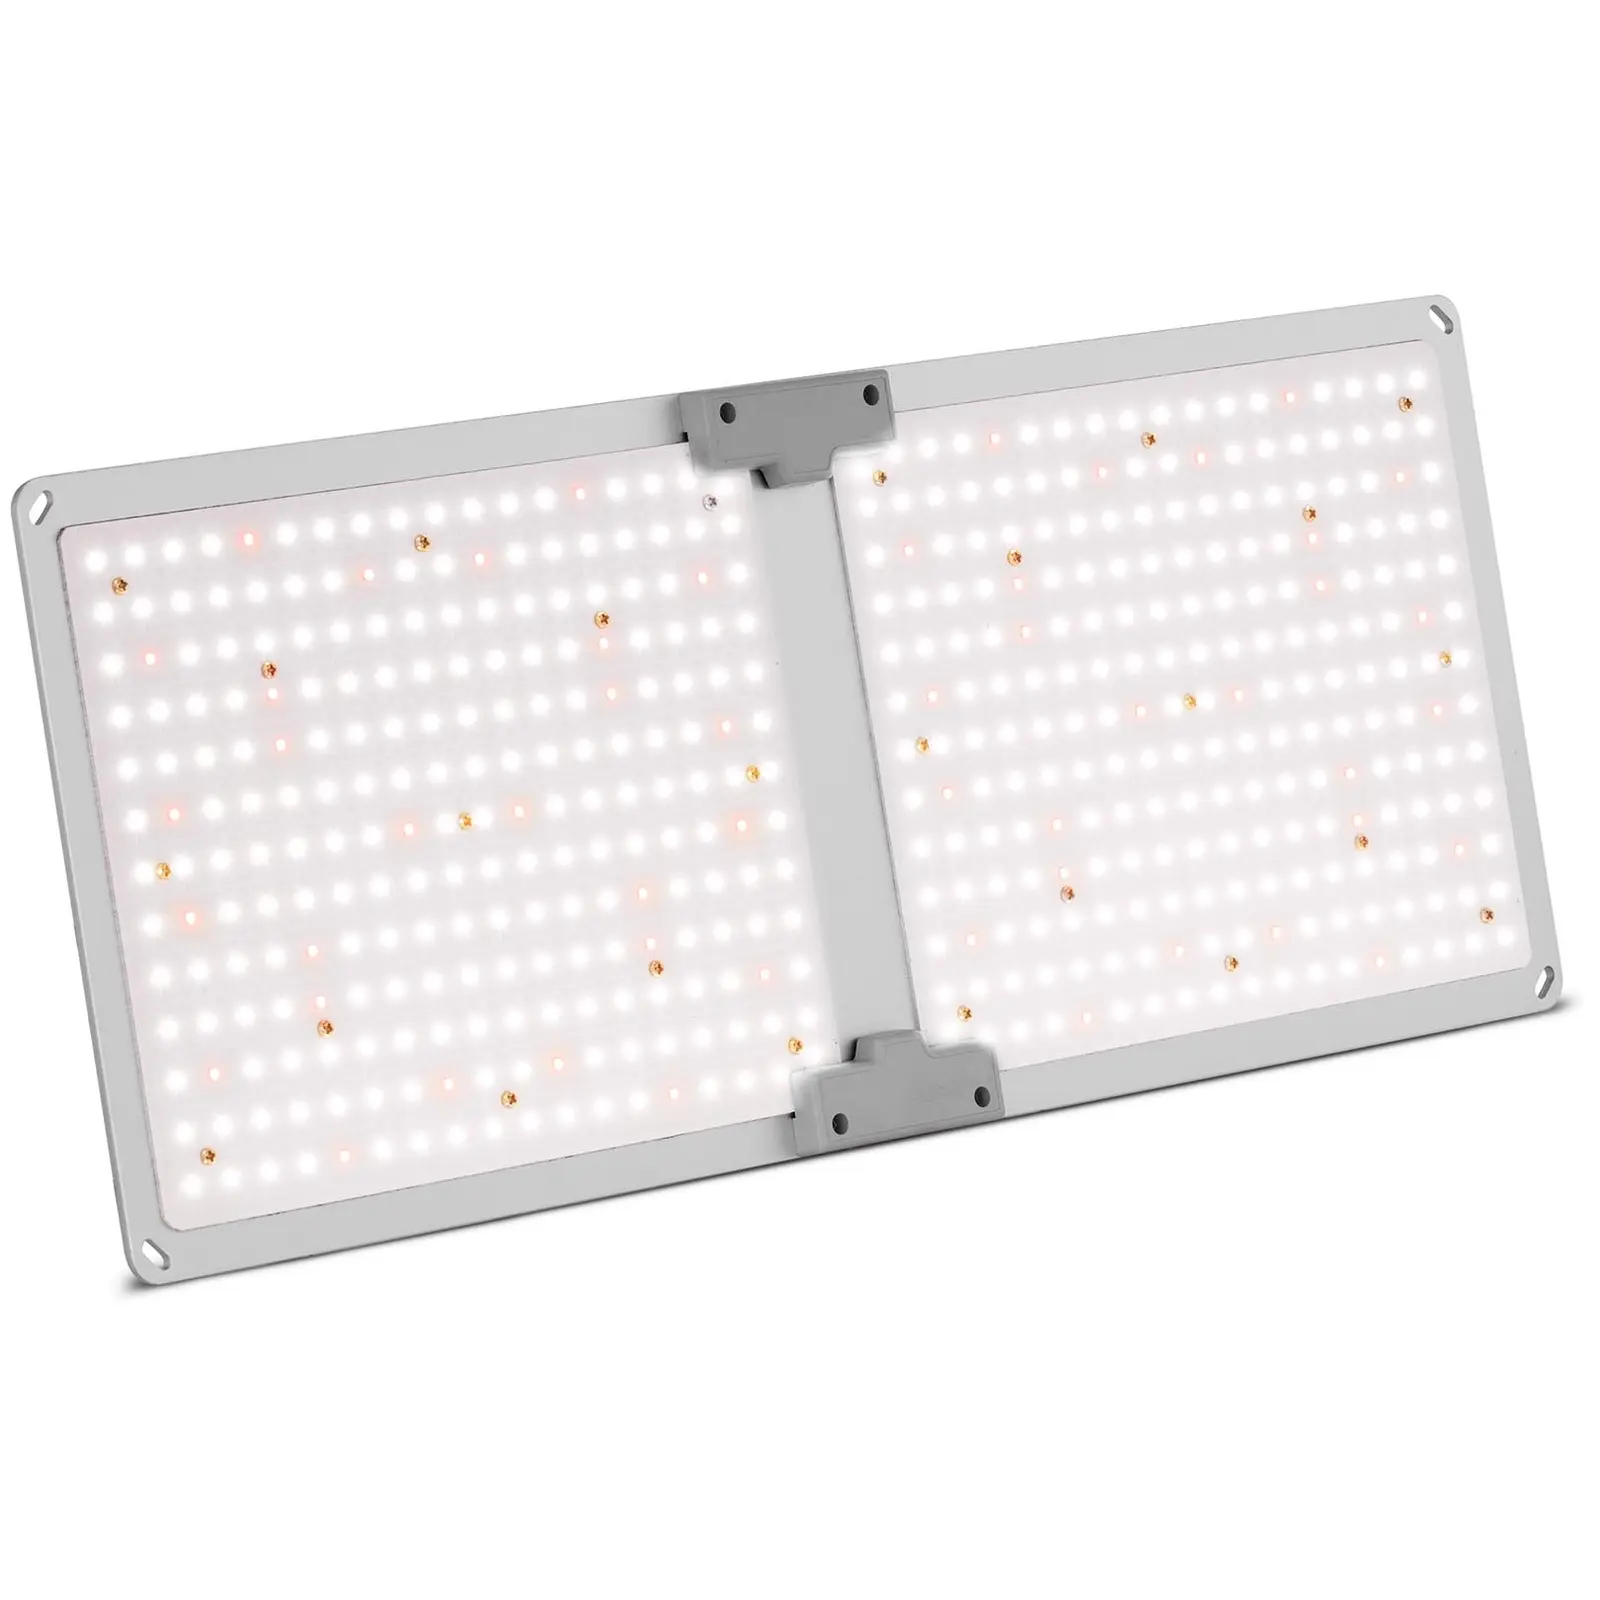 Odlingslampa - Fullspektrum - 2,000 W - 468 LED - 20 000 Lumen